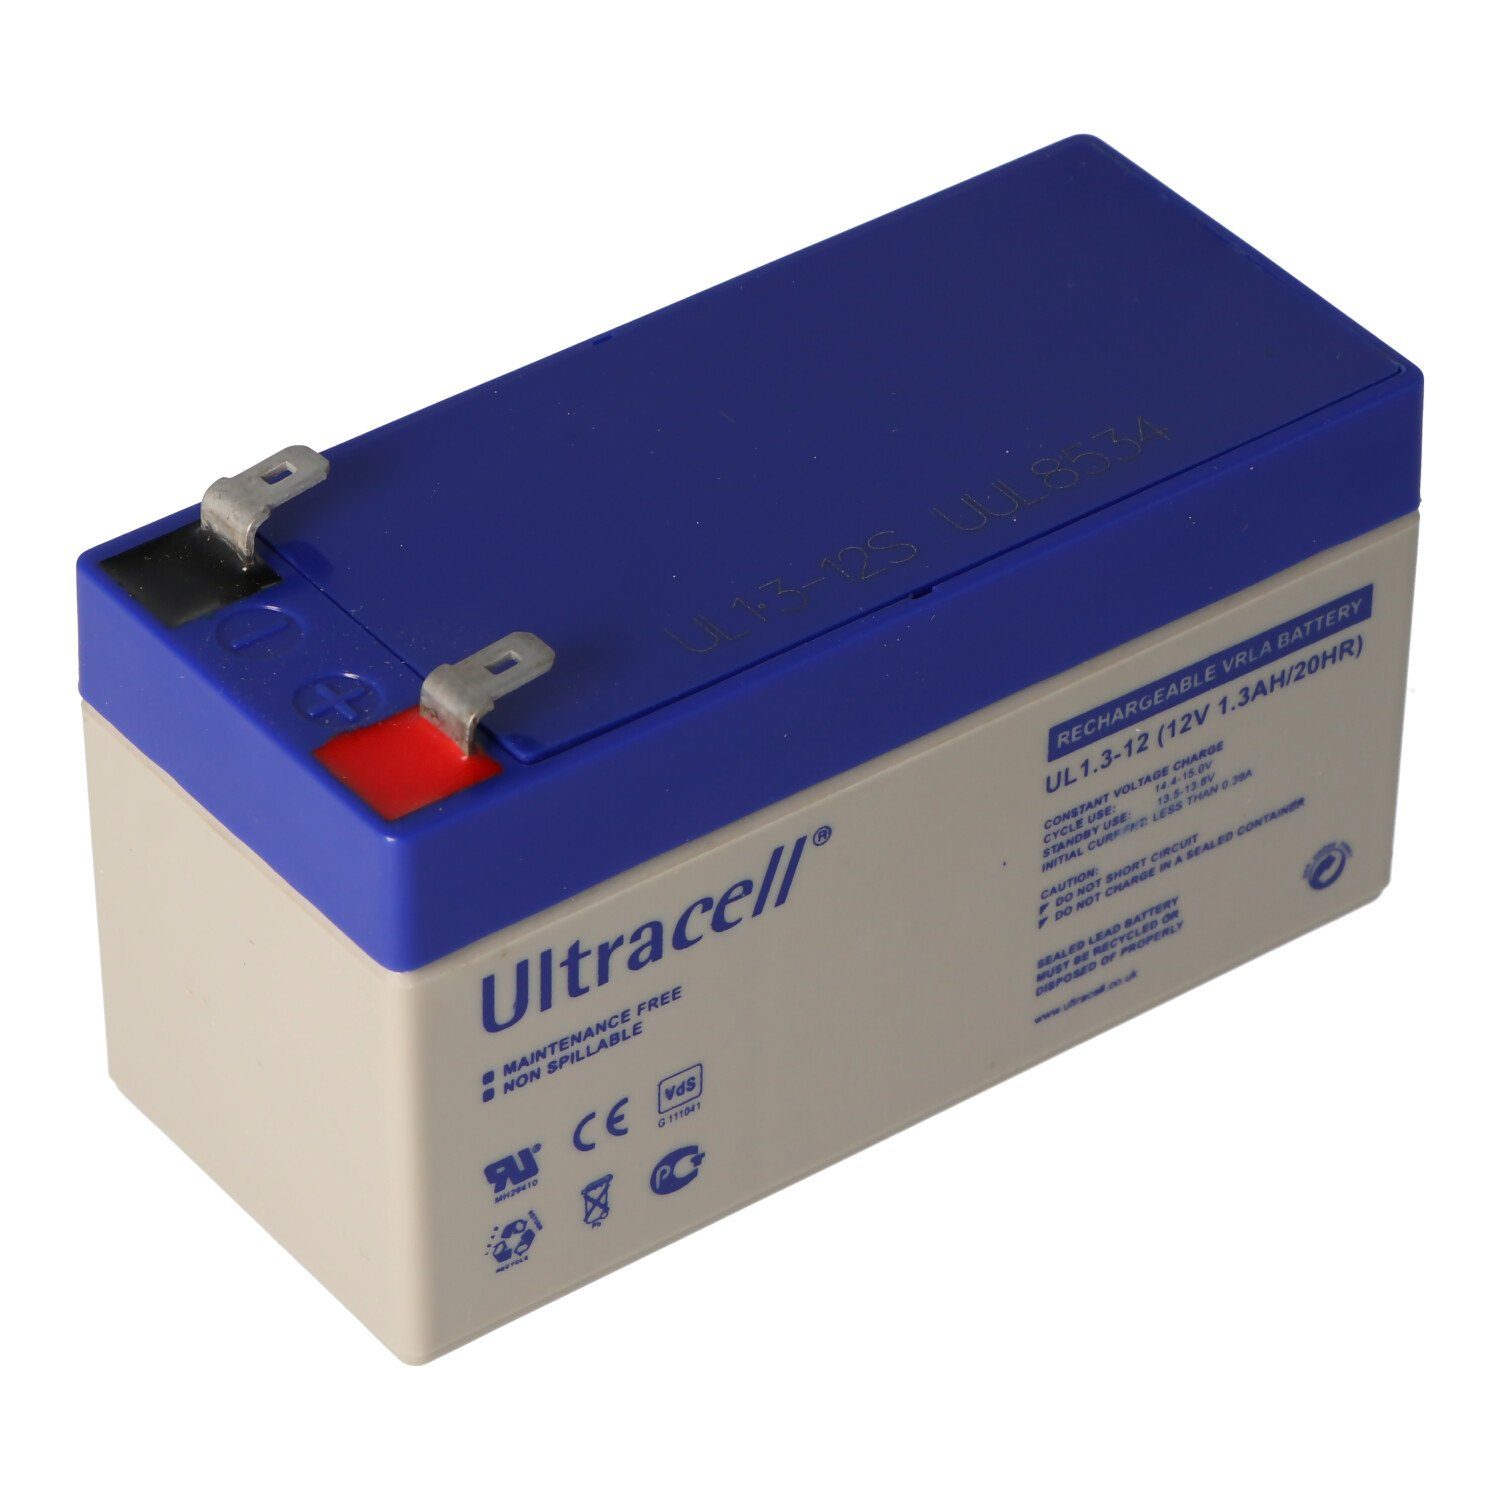 2 mit Ultracell V) (12,0 Blei Kontak UL1.3-12 mAh 1,3Ah Akku 12 Volt, 4,8mm Faston Akku Ultracell 1300